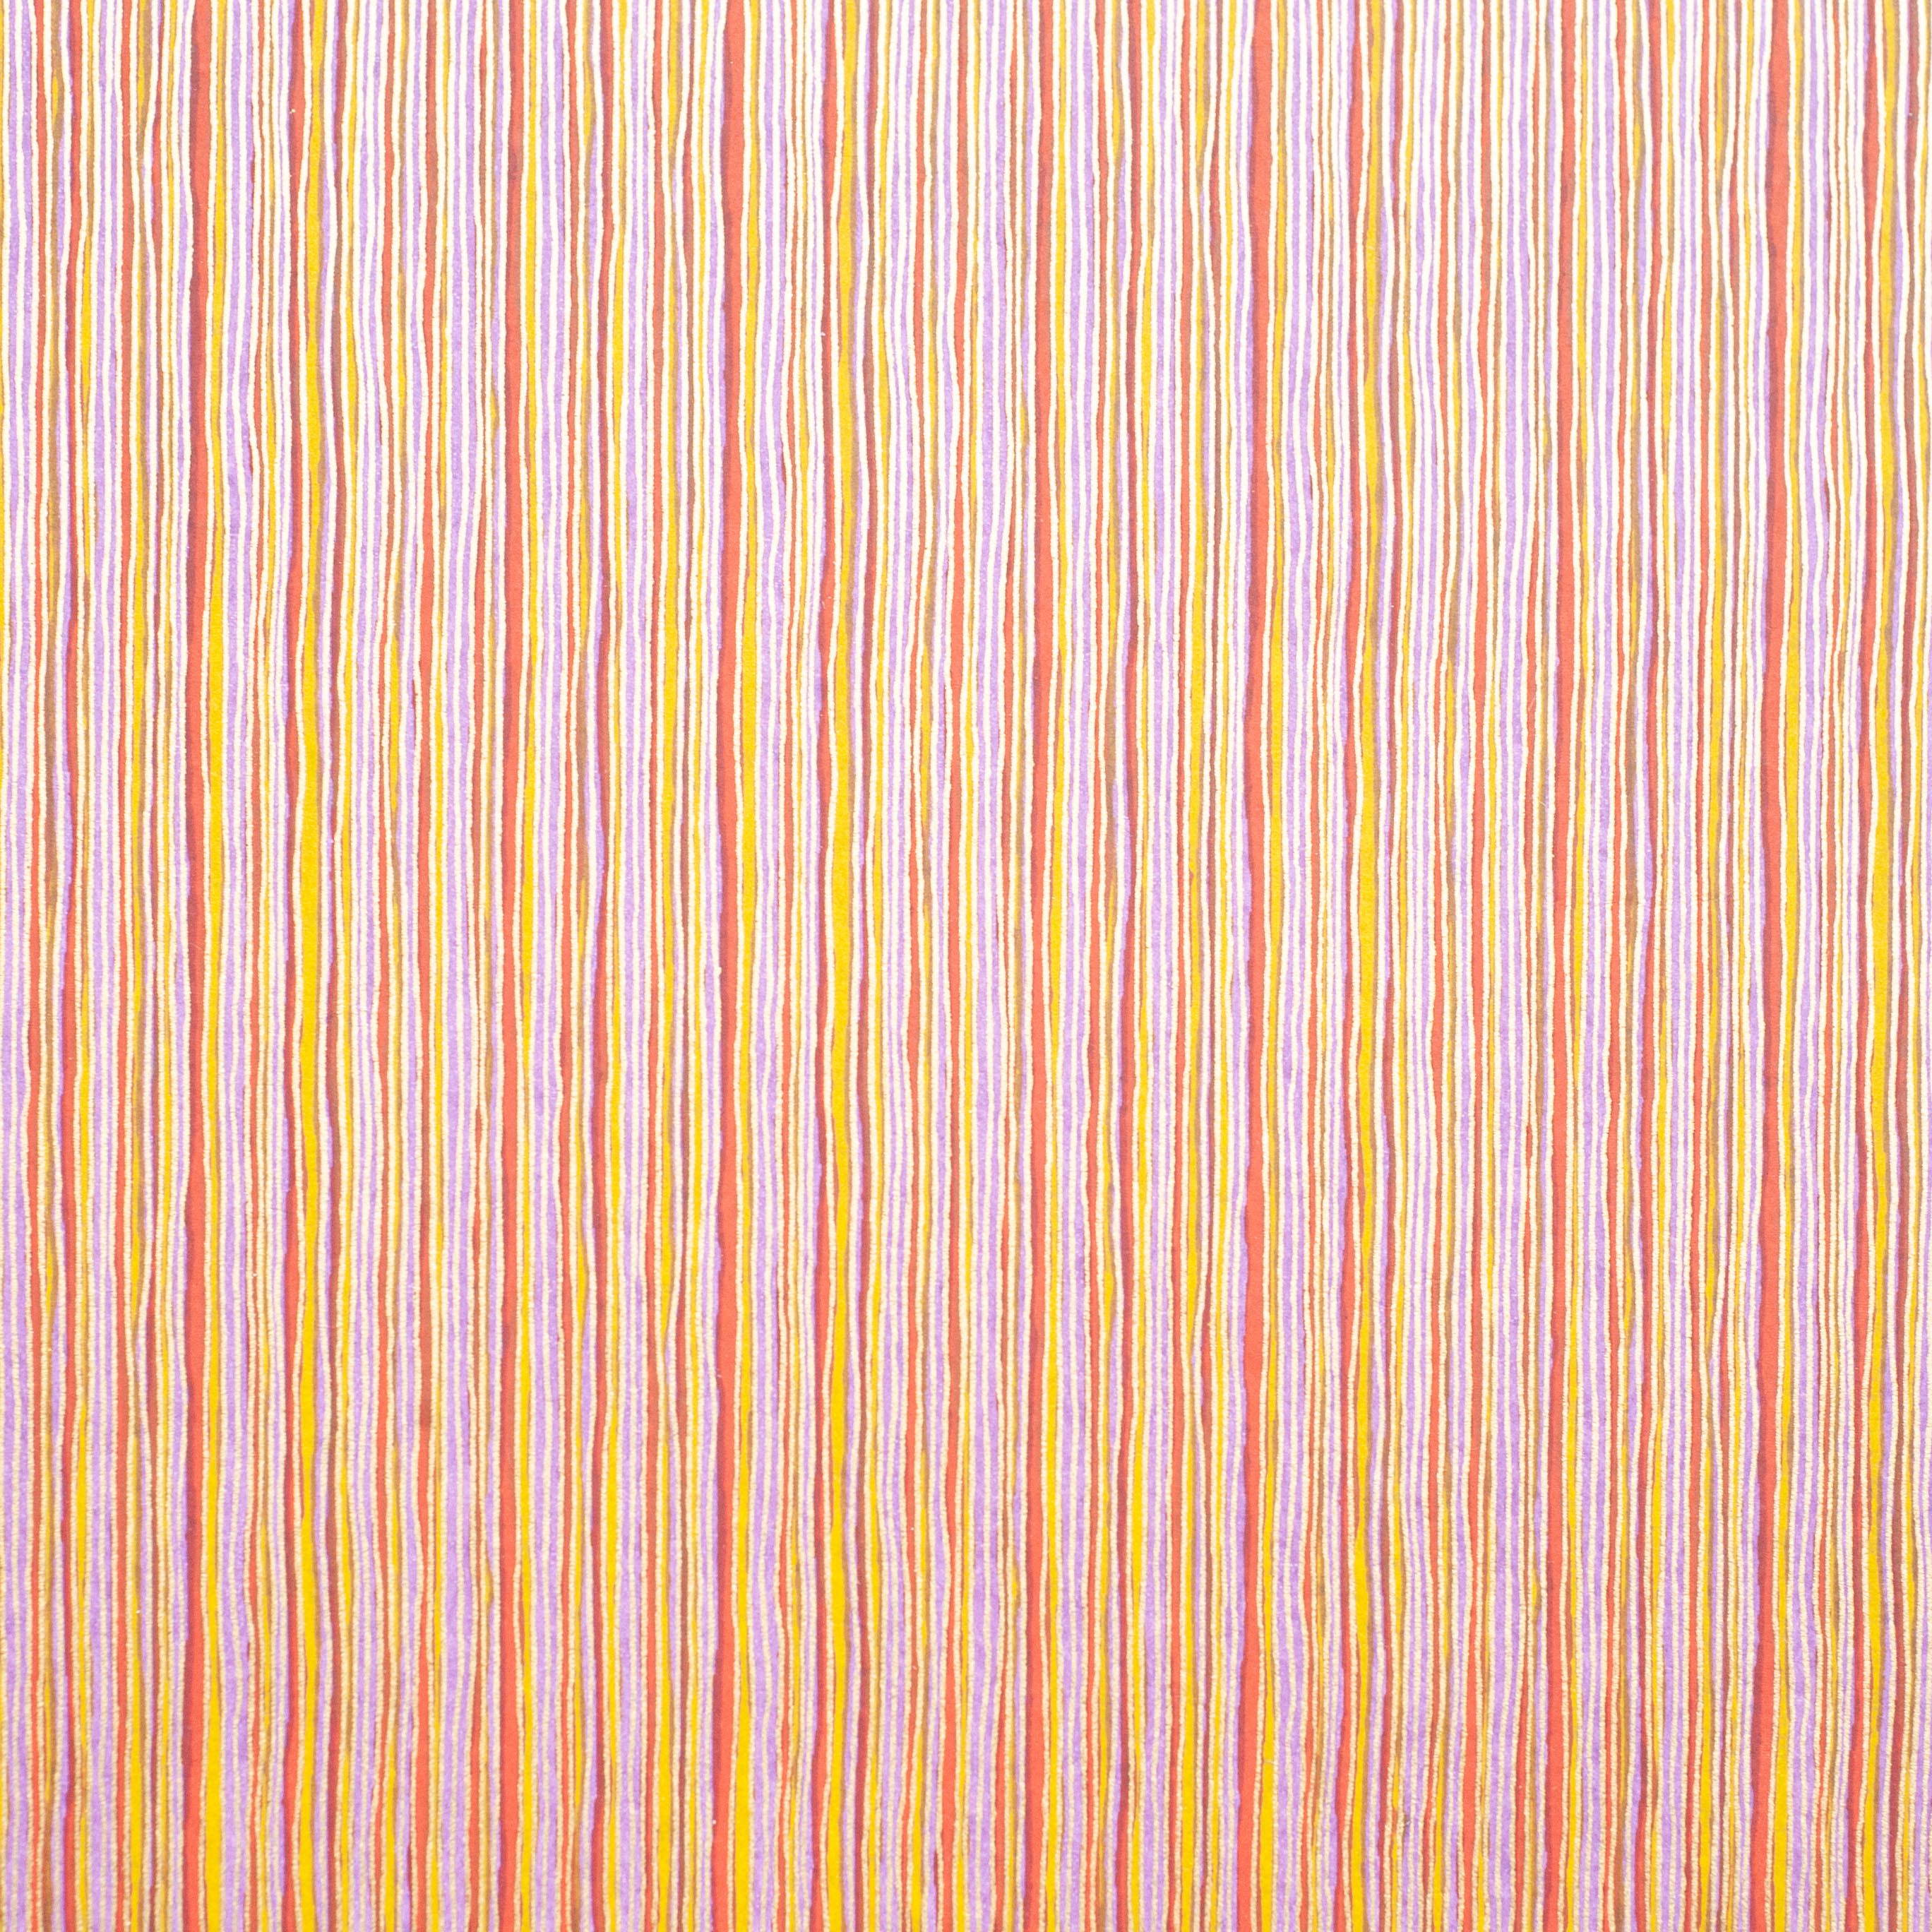 CH440: Wavy Stripes Mustard/Red, Paper, Kami - Kami 